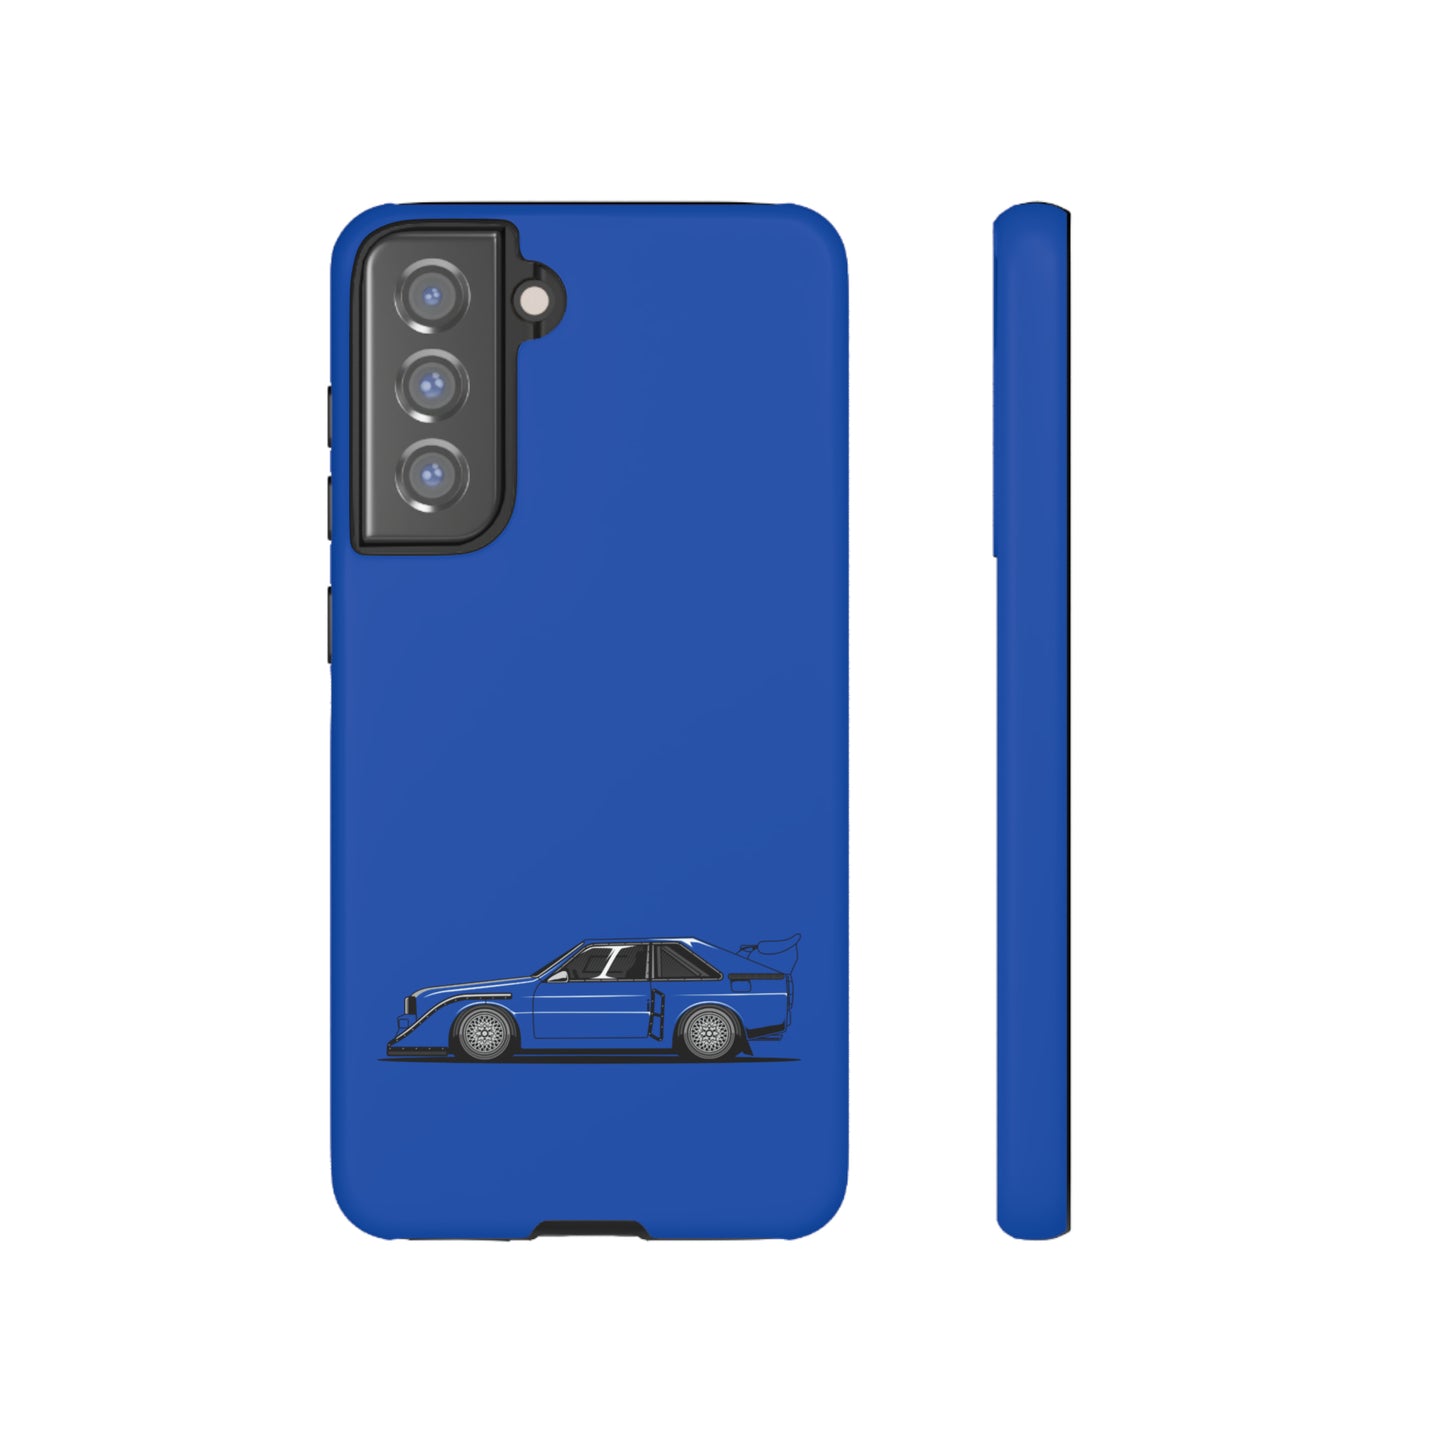 Shark Blue S1E2 - Schutzhülle iPhone/Samsung/Google Pixel